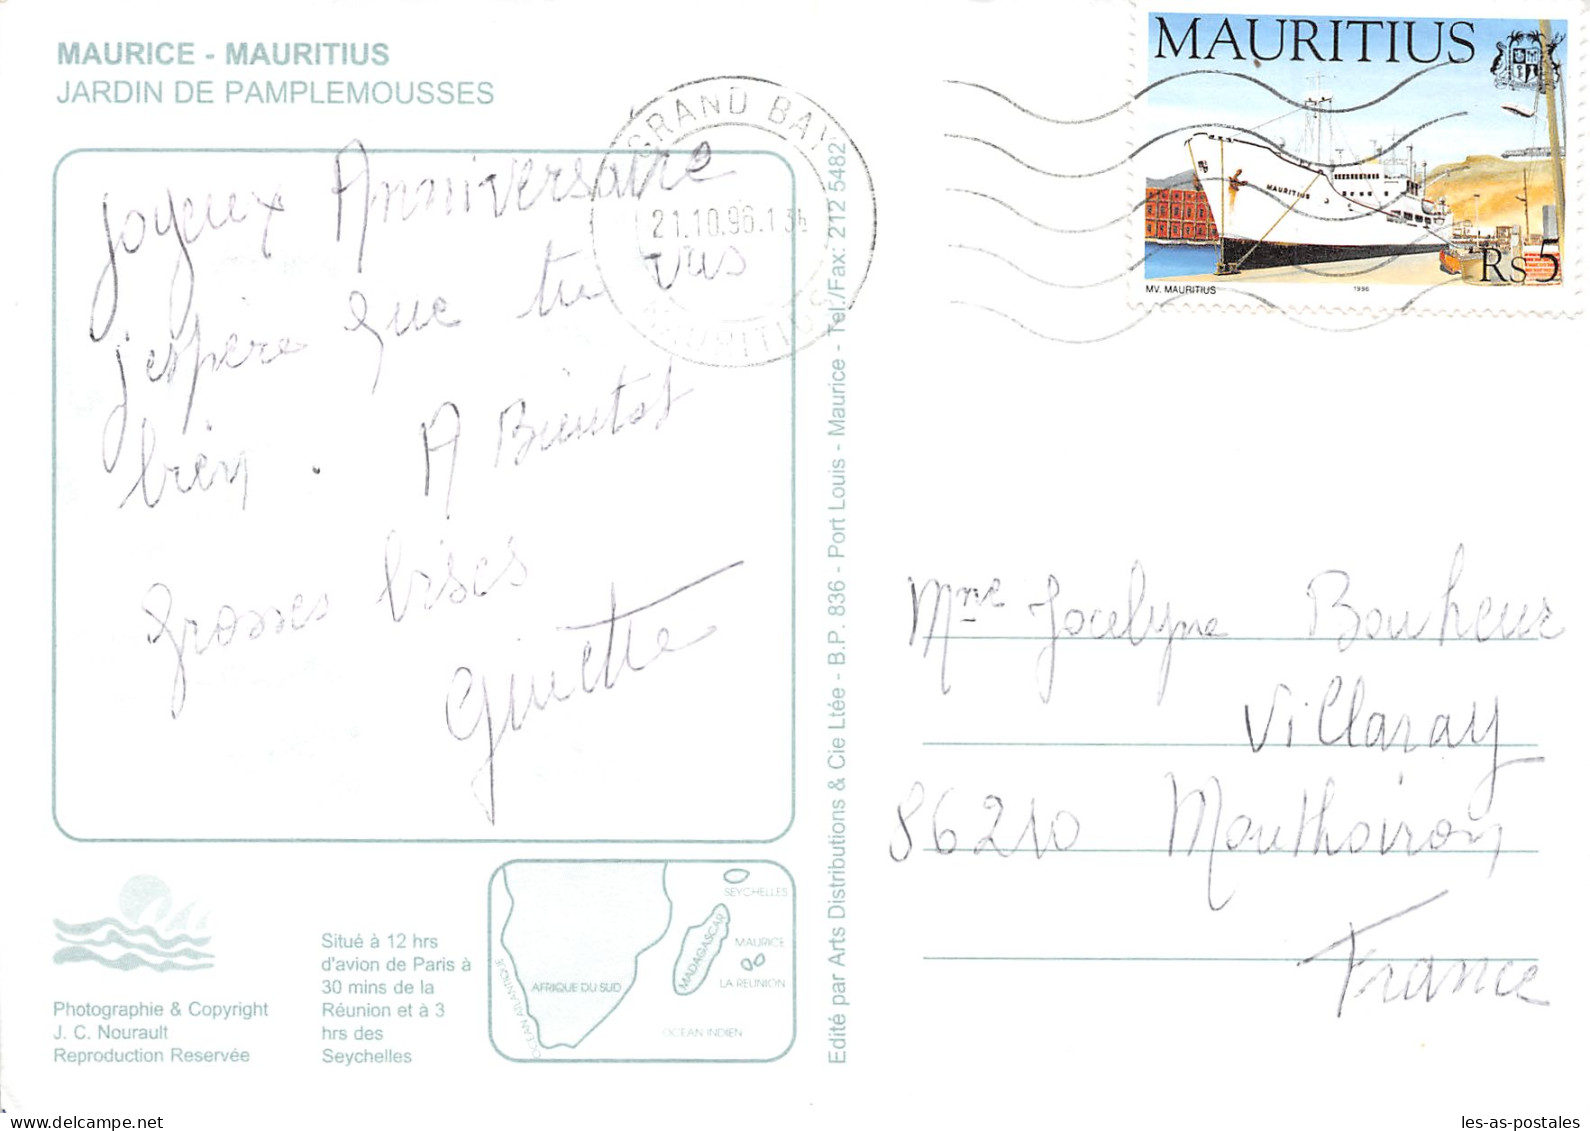 MAURITIUS JARDIN DE PAMPLEMOUSSES - Mauritius